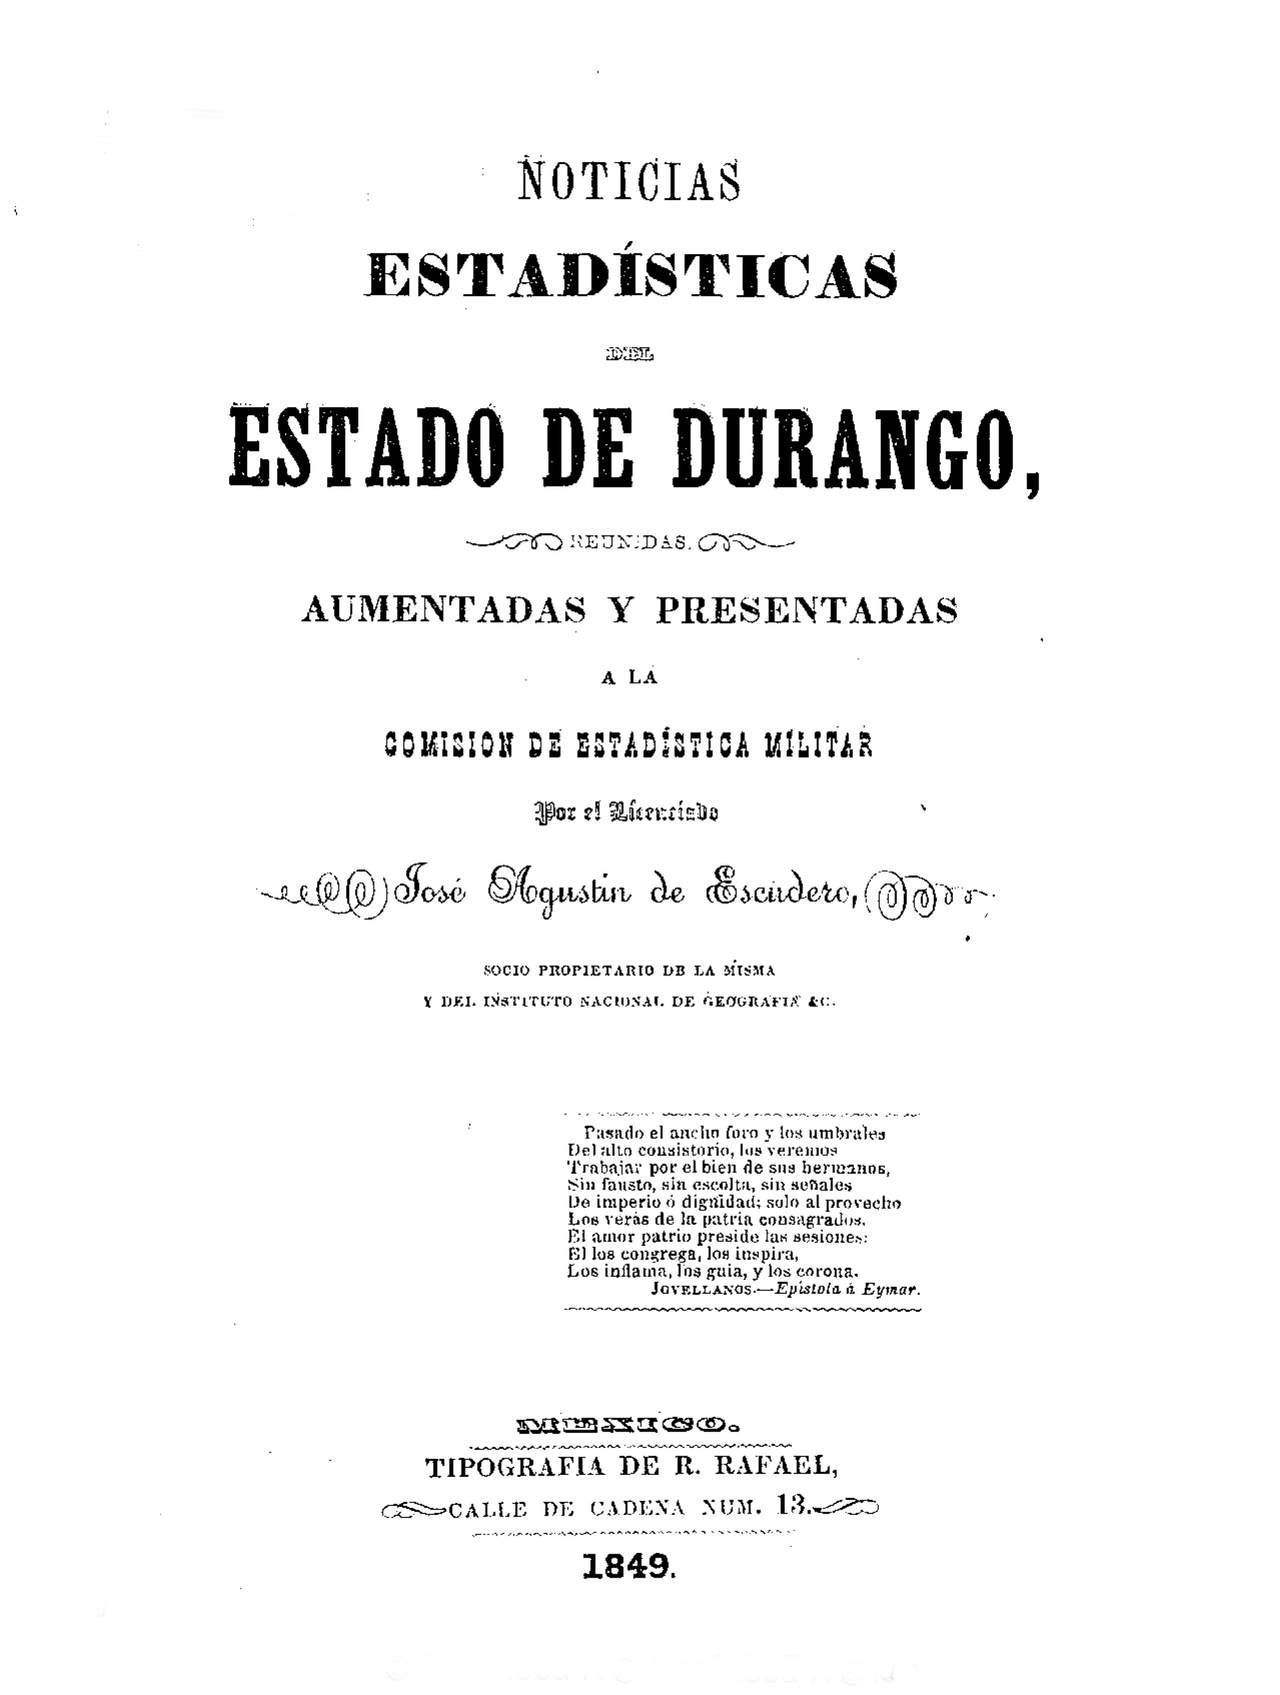 Noticias estadísticas del Estado de Durango.